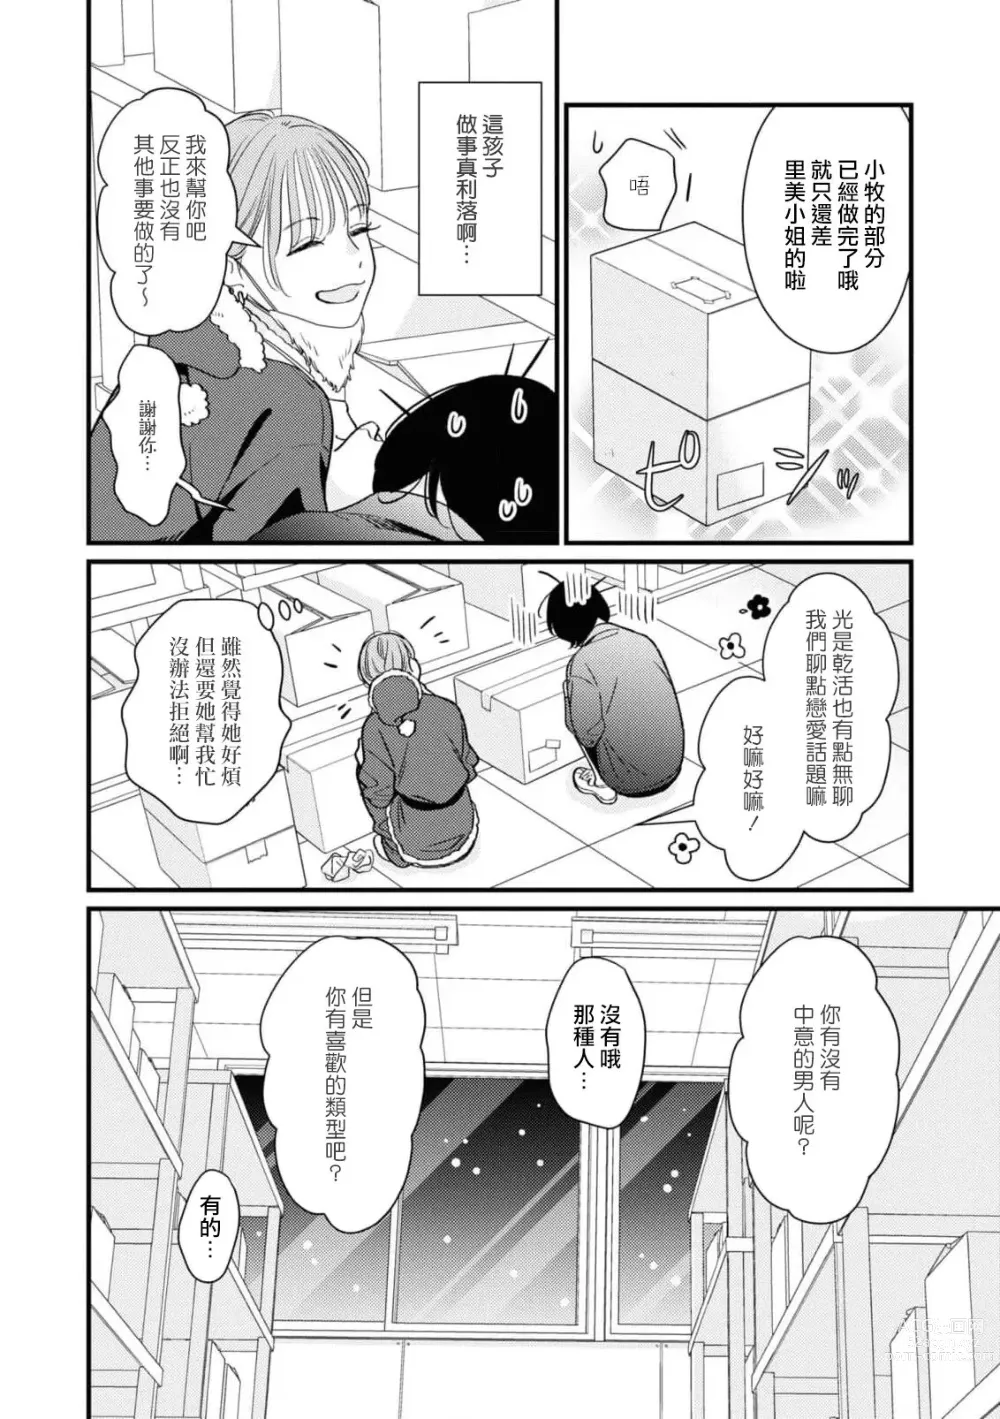 Page 4 of manga 延长30分钟的浪漫